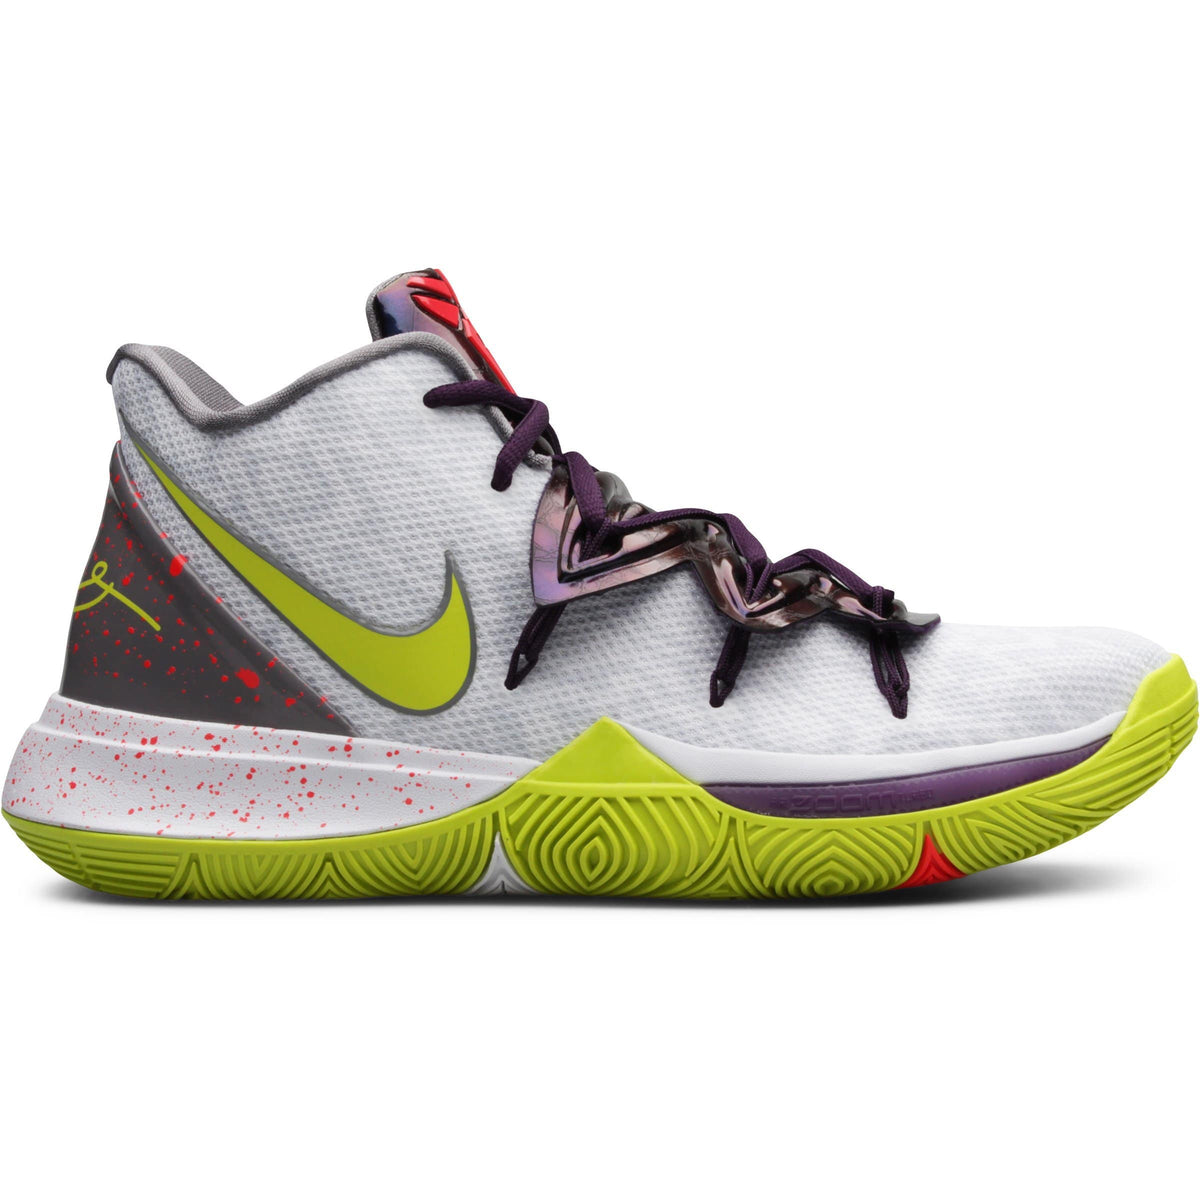 Nike Kyrie 5 Friends AQ2456 006 Release Date Sneaker